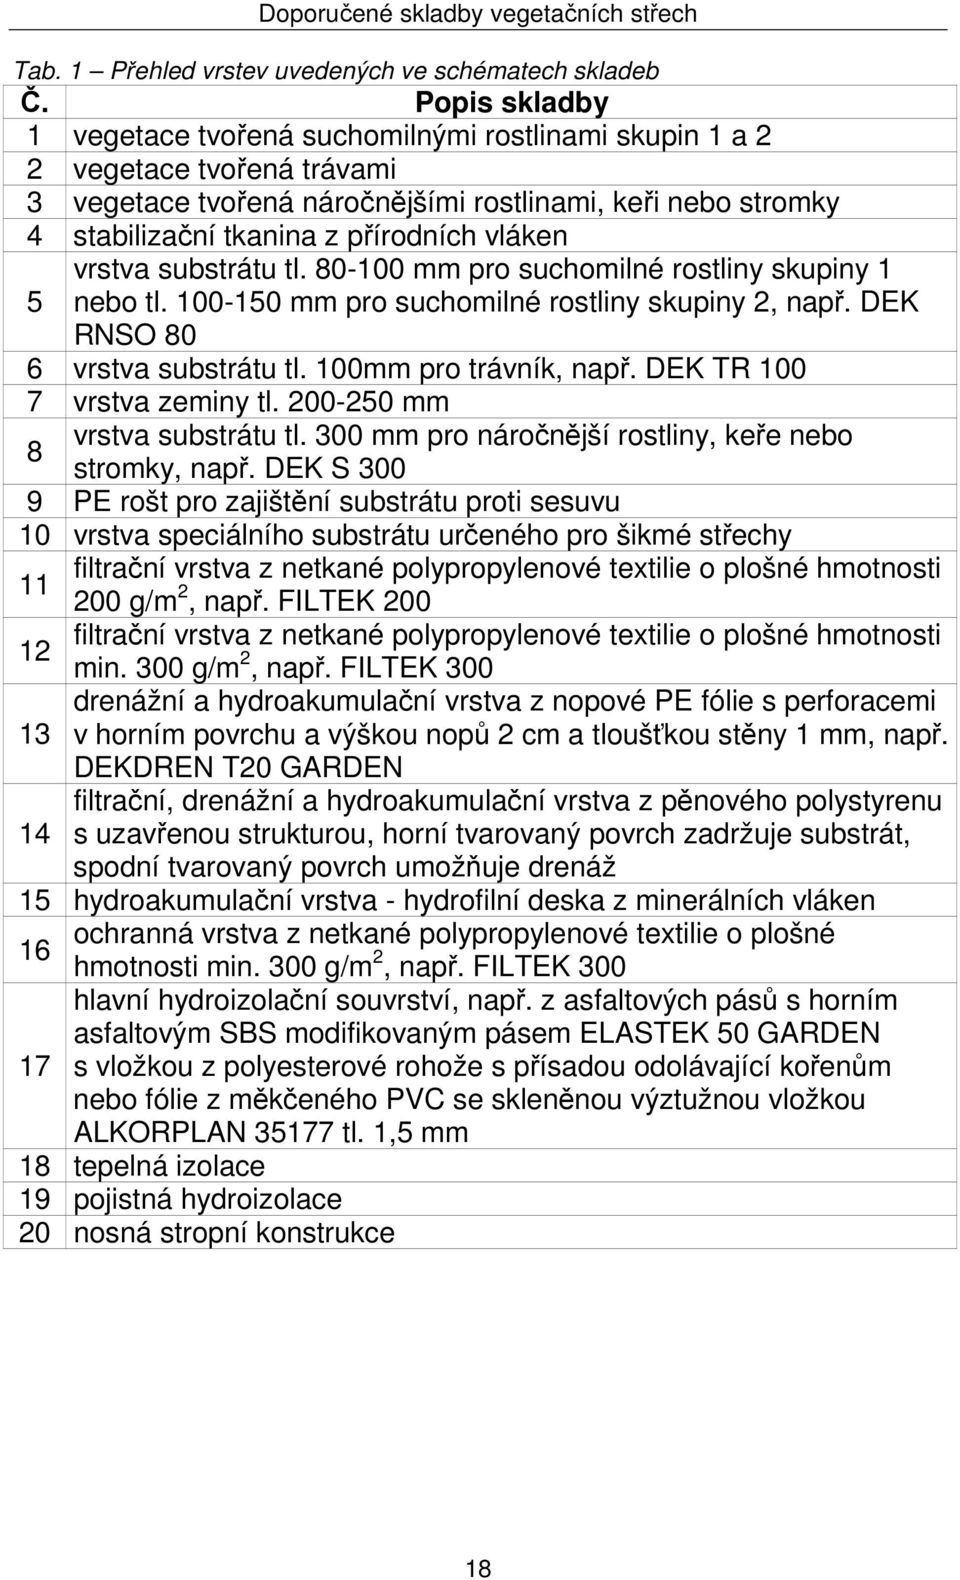 Vegetační střechy a střešní zahrady. Skladby a detaily únor 2009  konstrukční a materiálové řešení - PDF Free Download